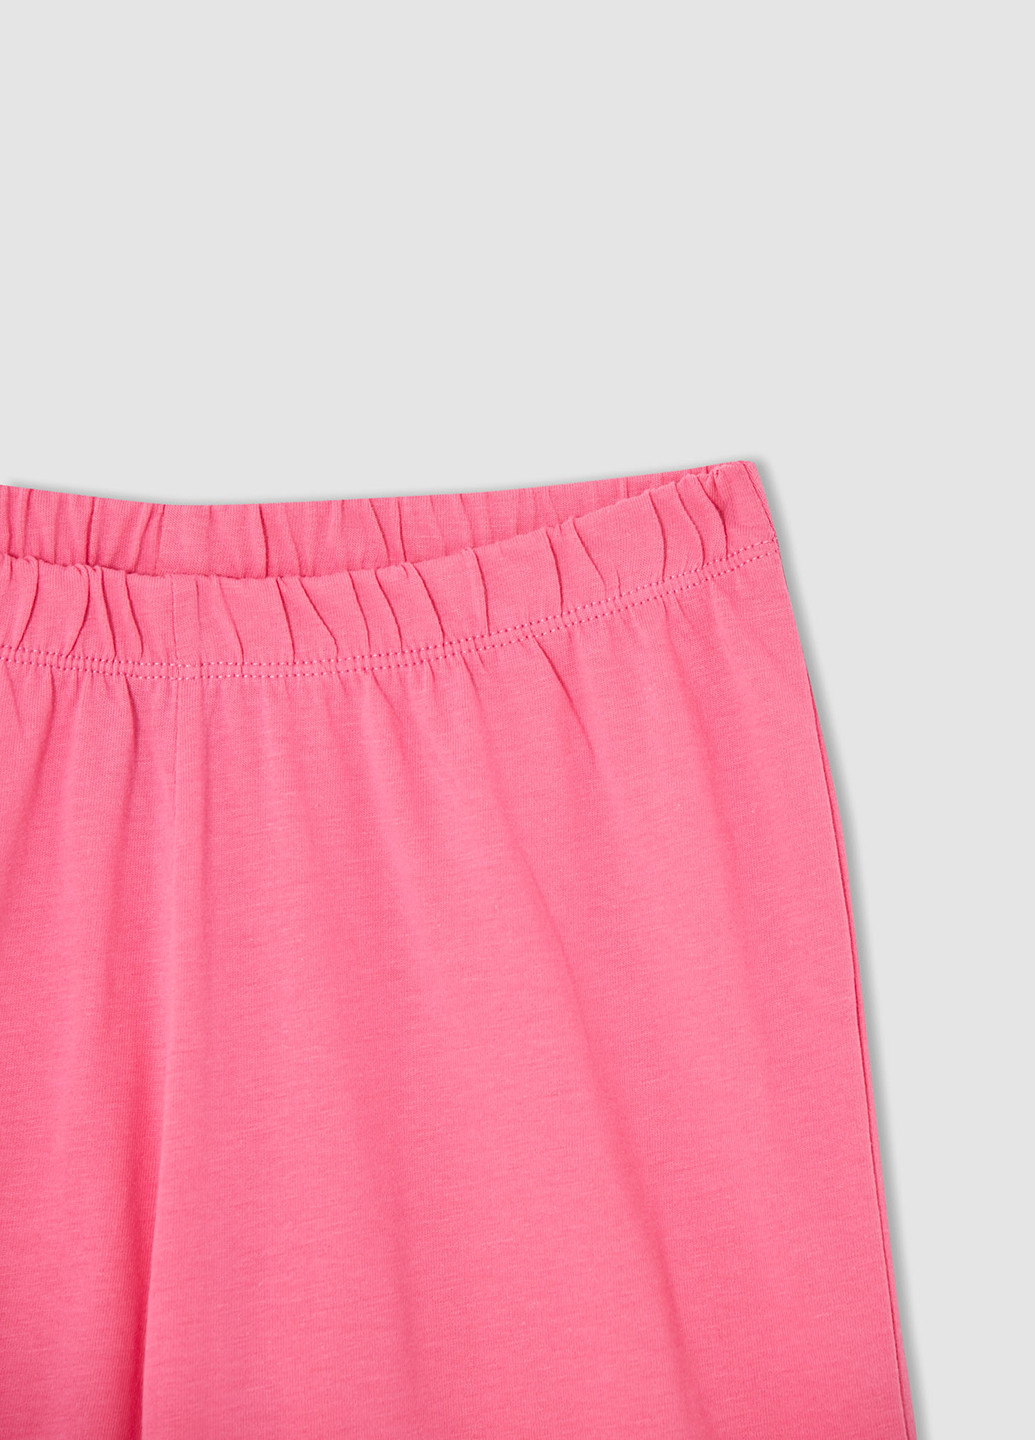 Рожева всесезон піжама (футболка, шорти) футболка + шорти DeFacto